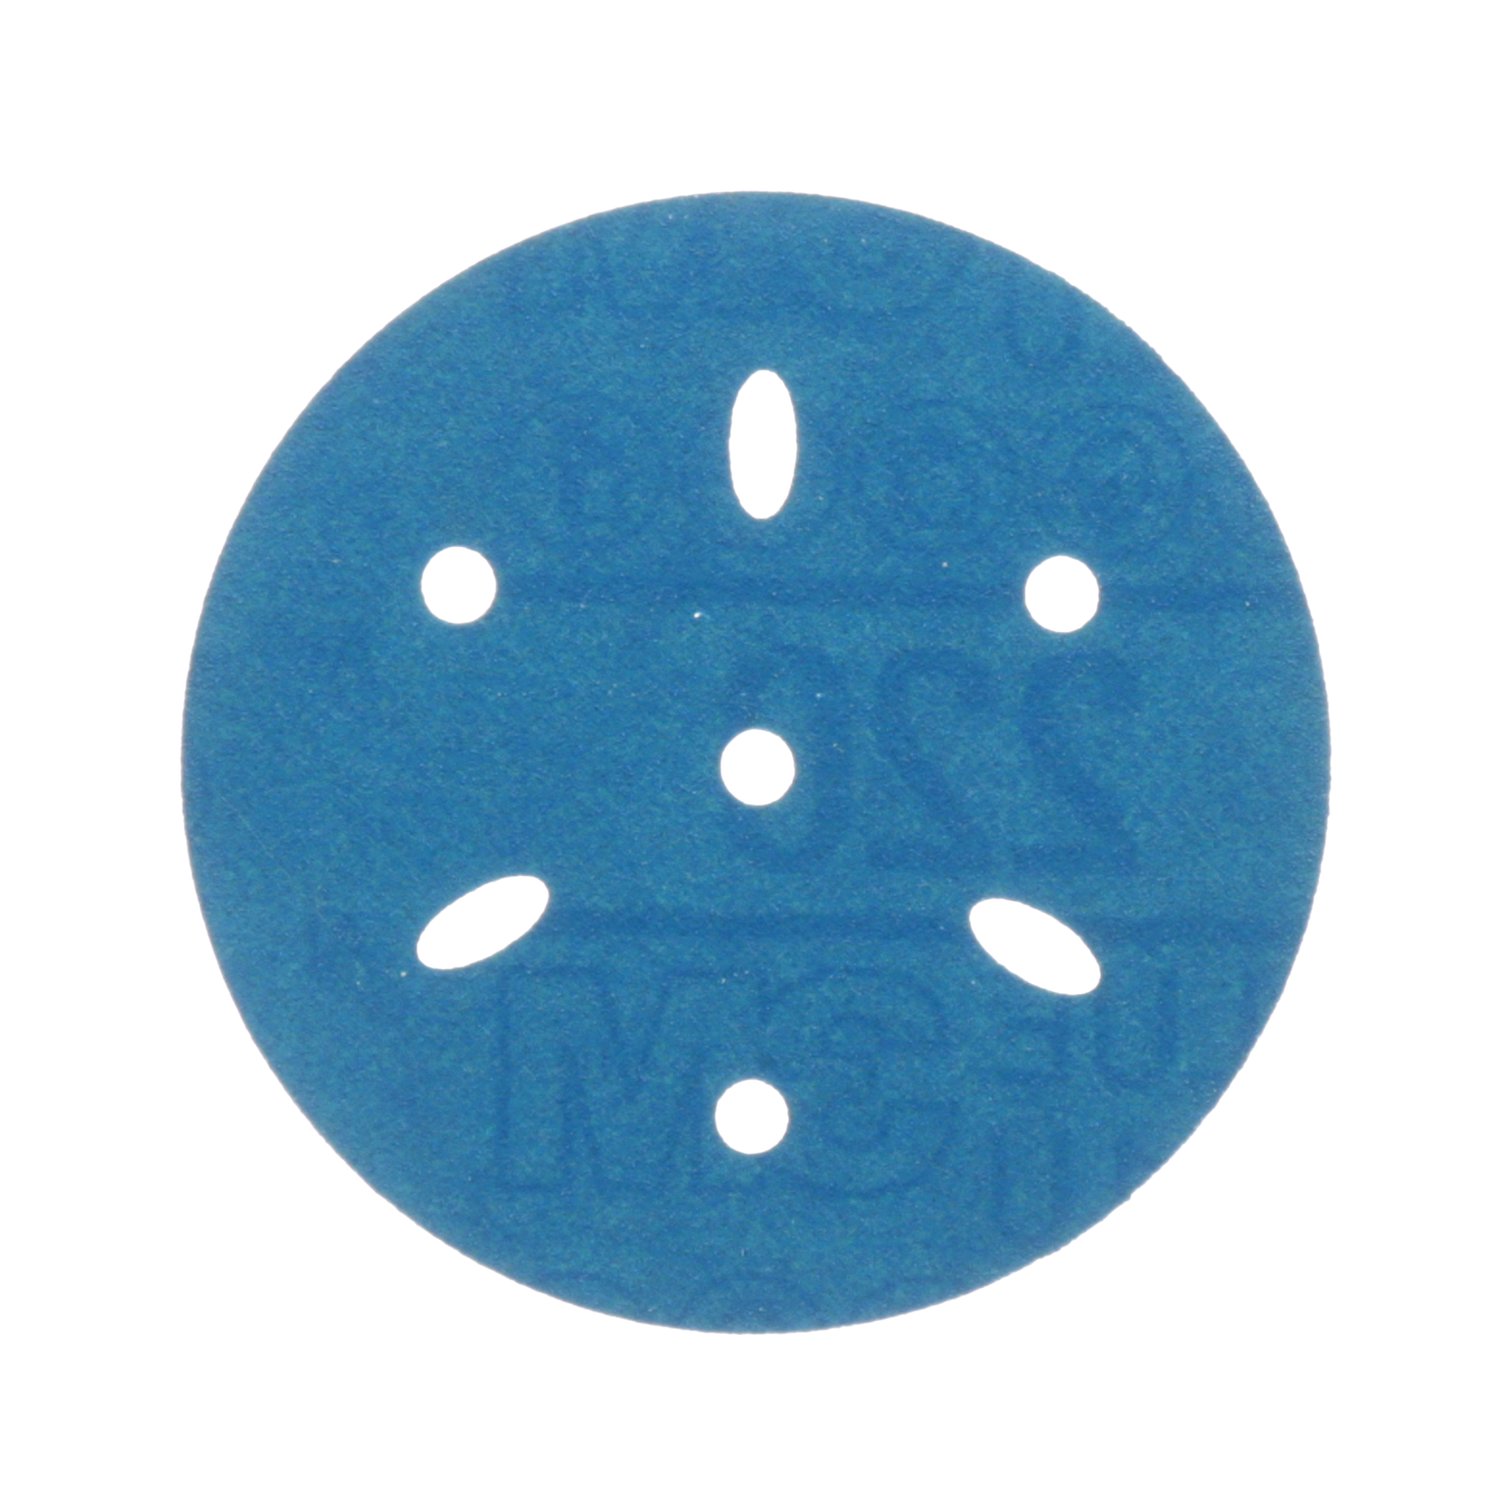 7100216058 - 3M Hookit Blue Abrasive Disc 321U, 36148, 3 in, 240 grade, Multi-hole, 50 discs per carton, 4 cartons per case